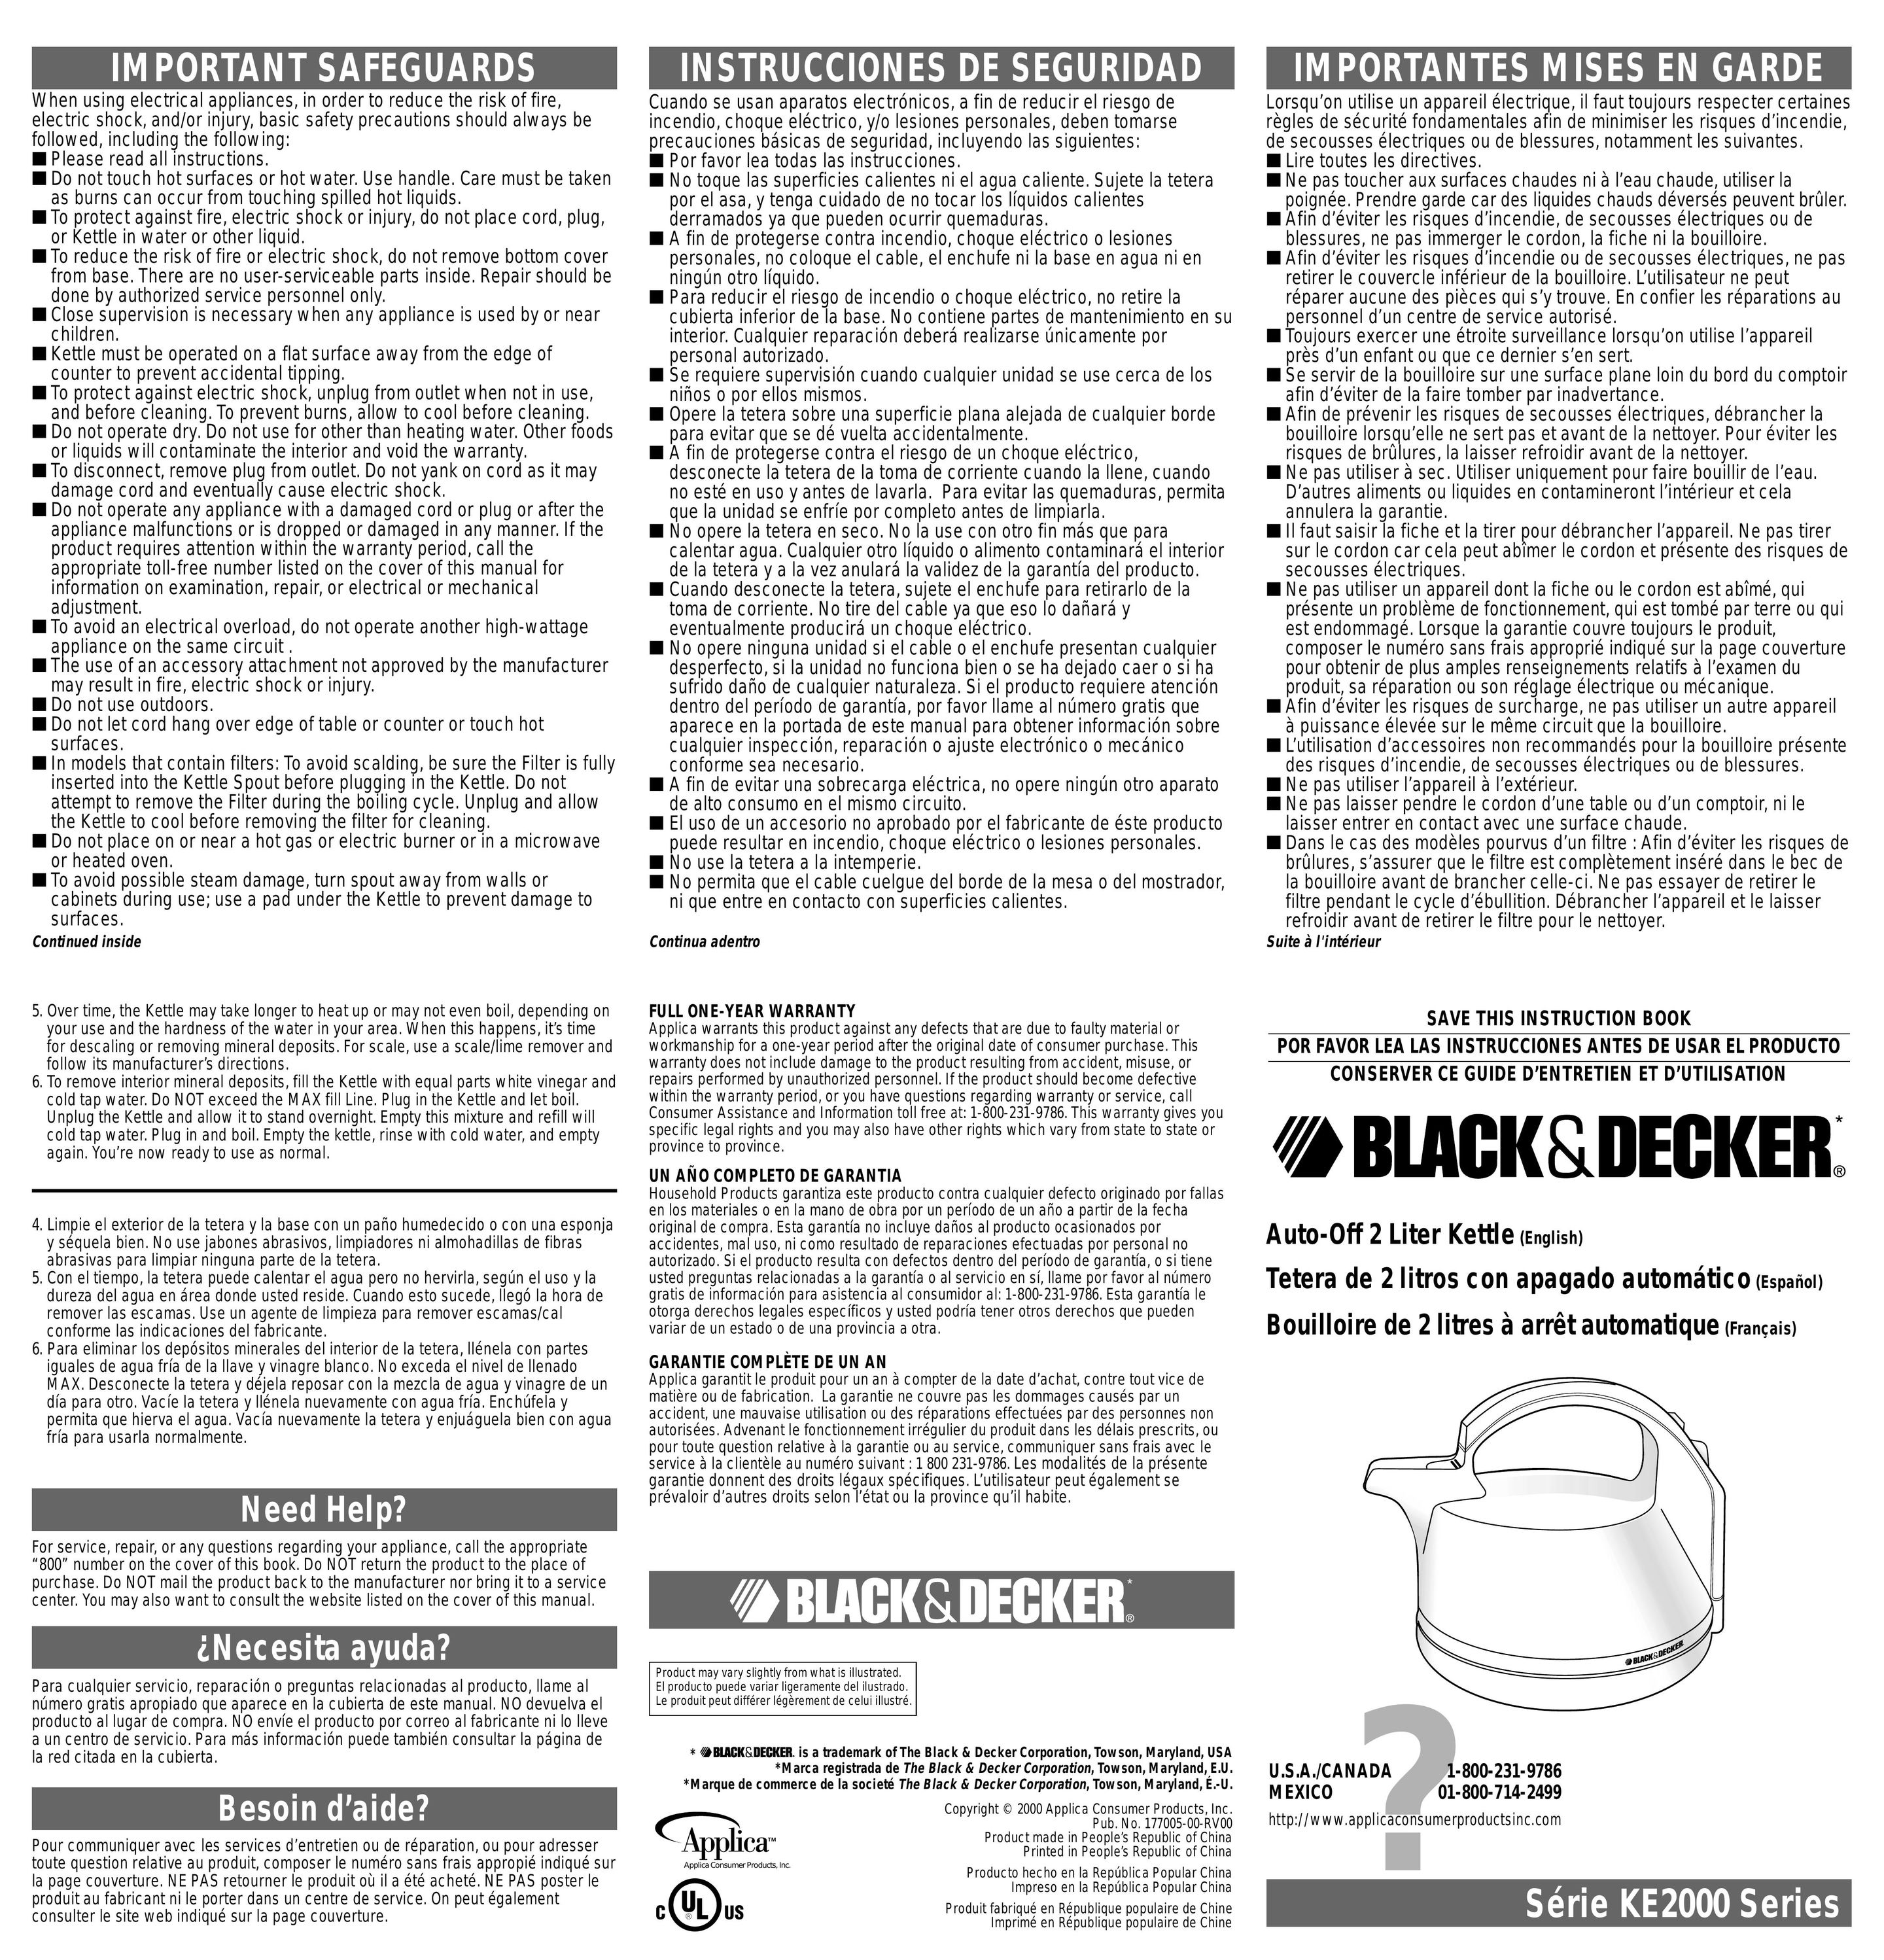 Black & Decker KE2000 Hot Beverage Maker User Manual